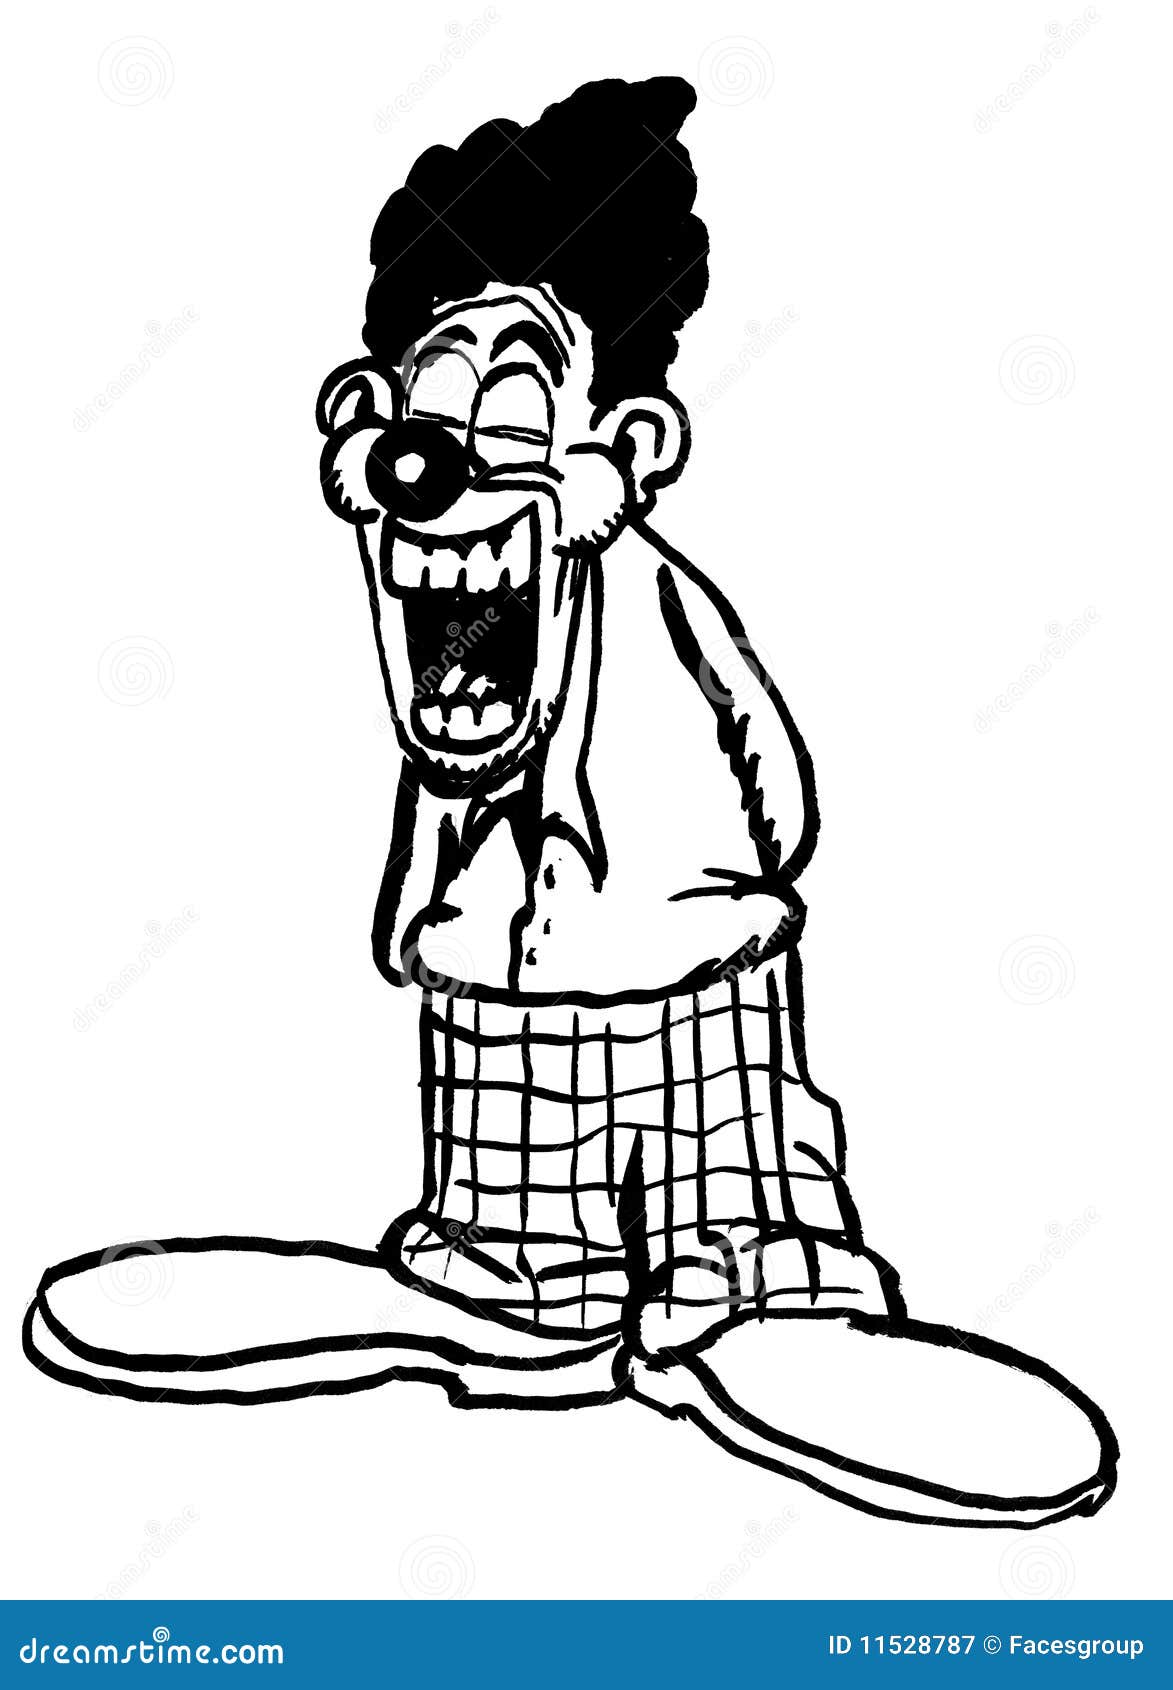 cartoon drawing of a stupid clown